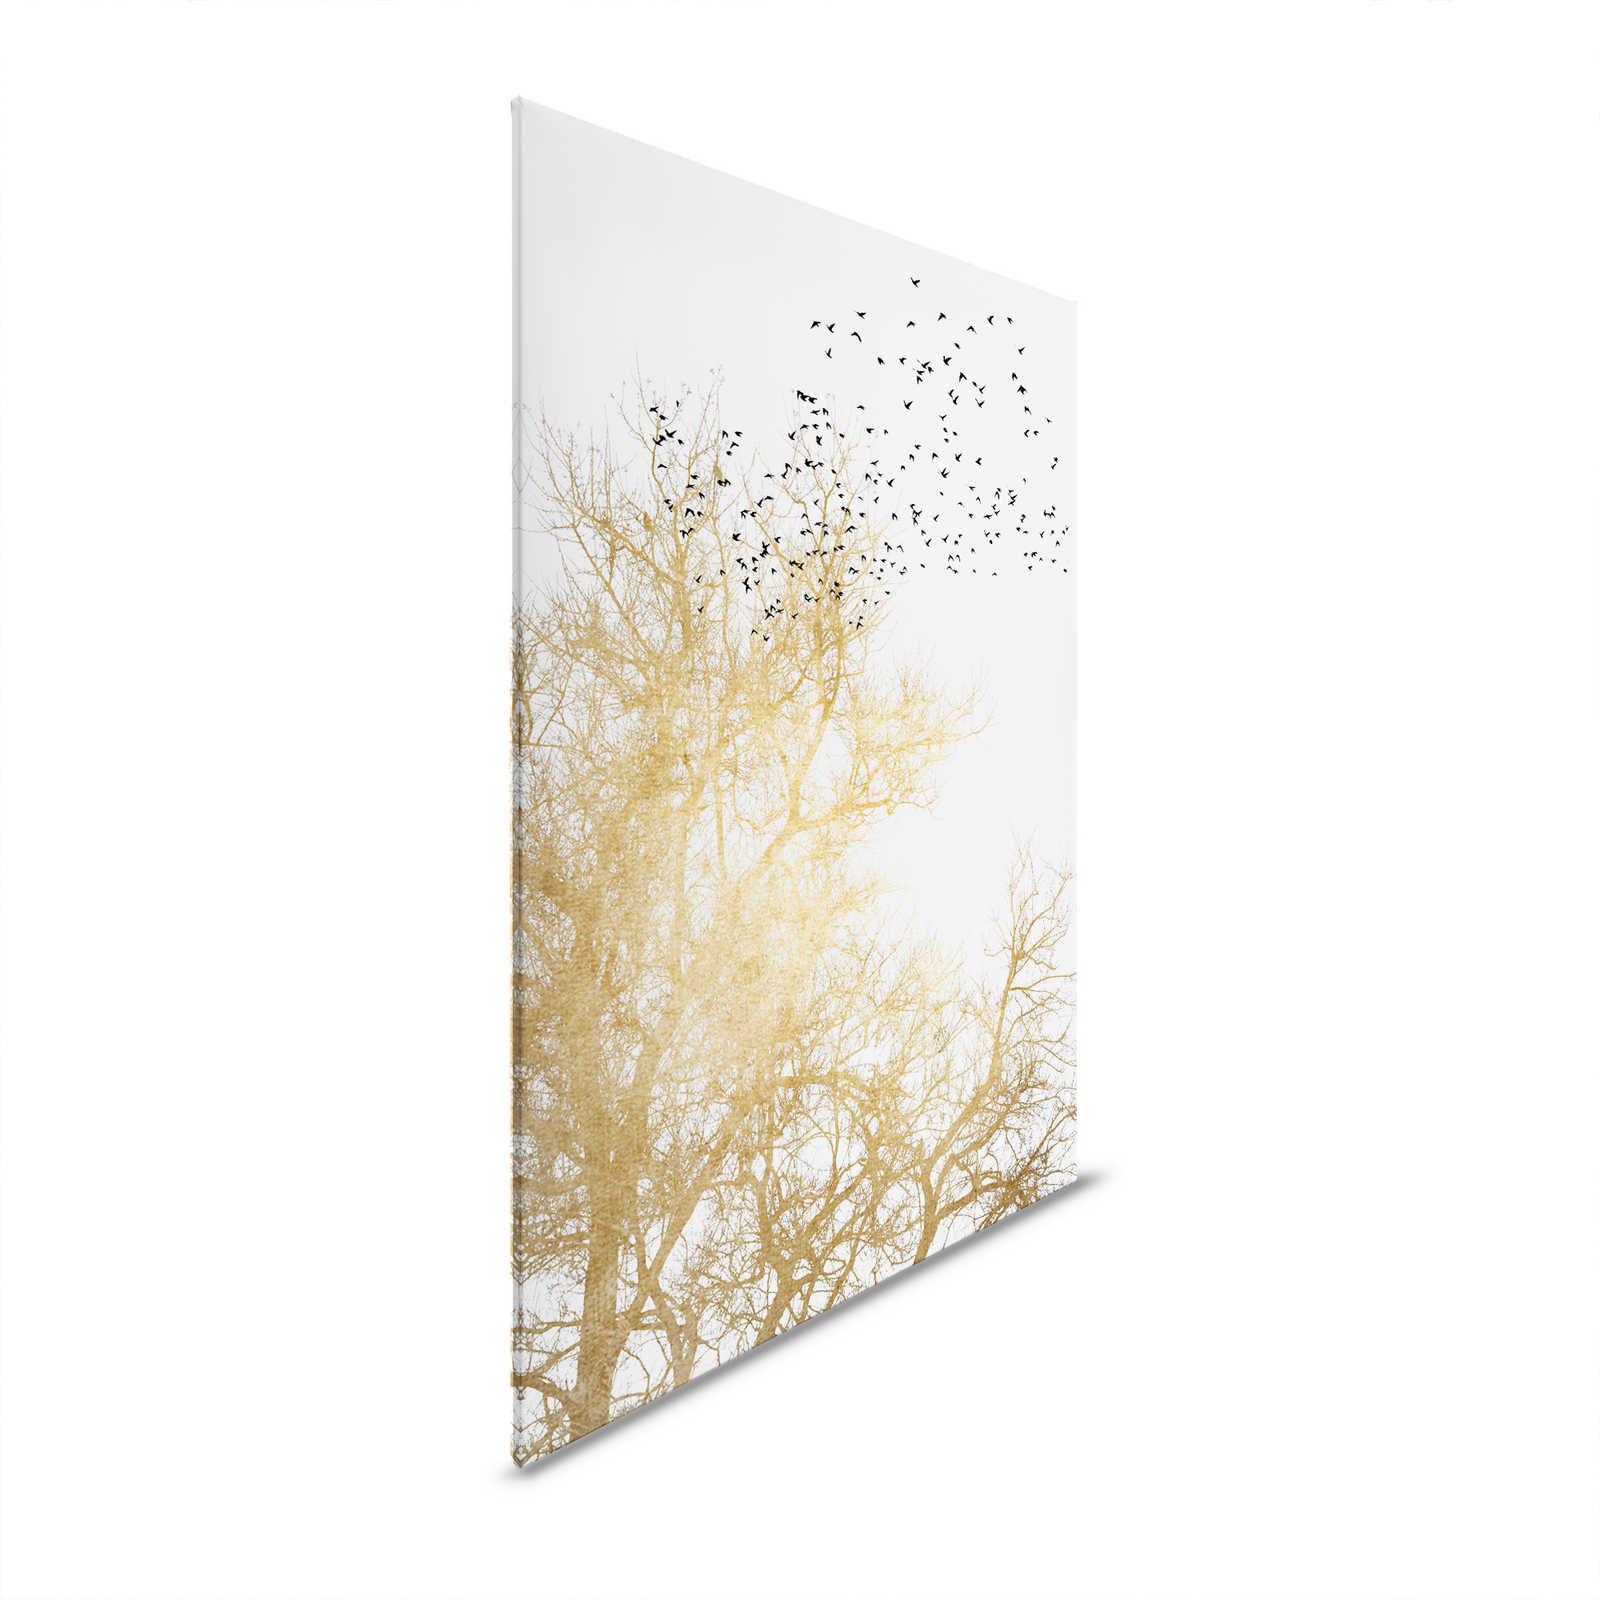 Cuadro en lienzo con árboles dorados y bandada de pájaros - 1,20 m x 0,80 m
